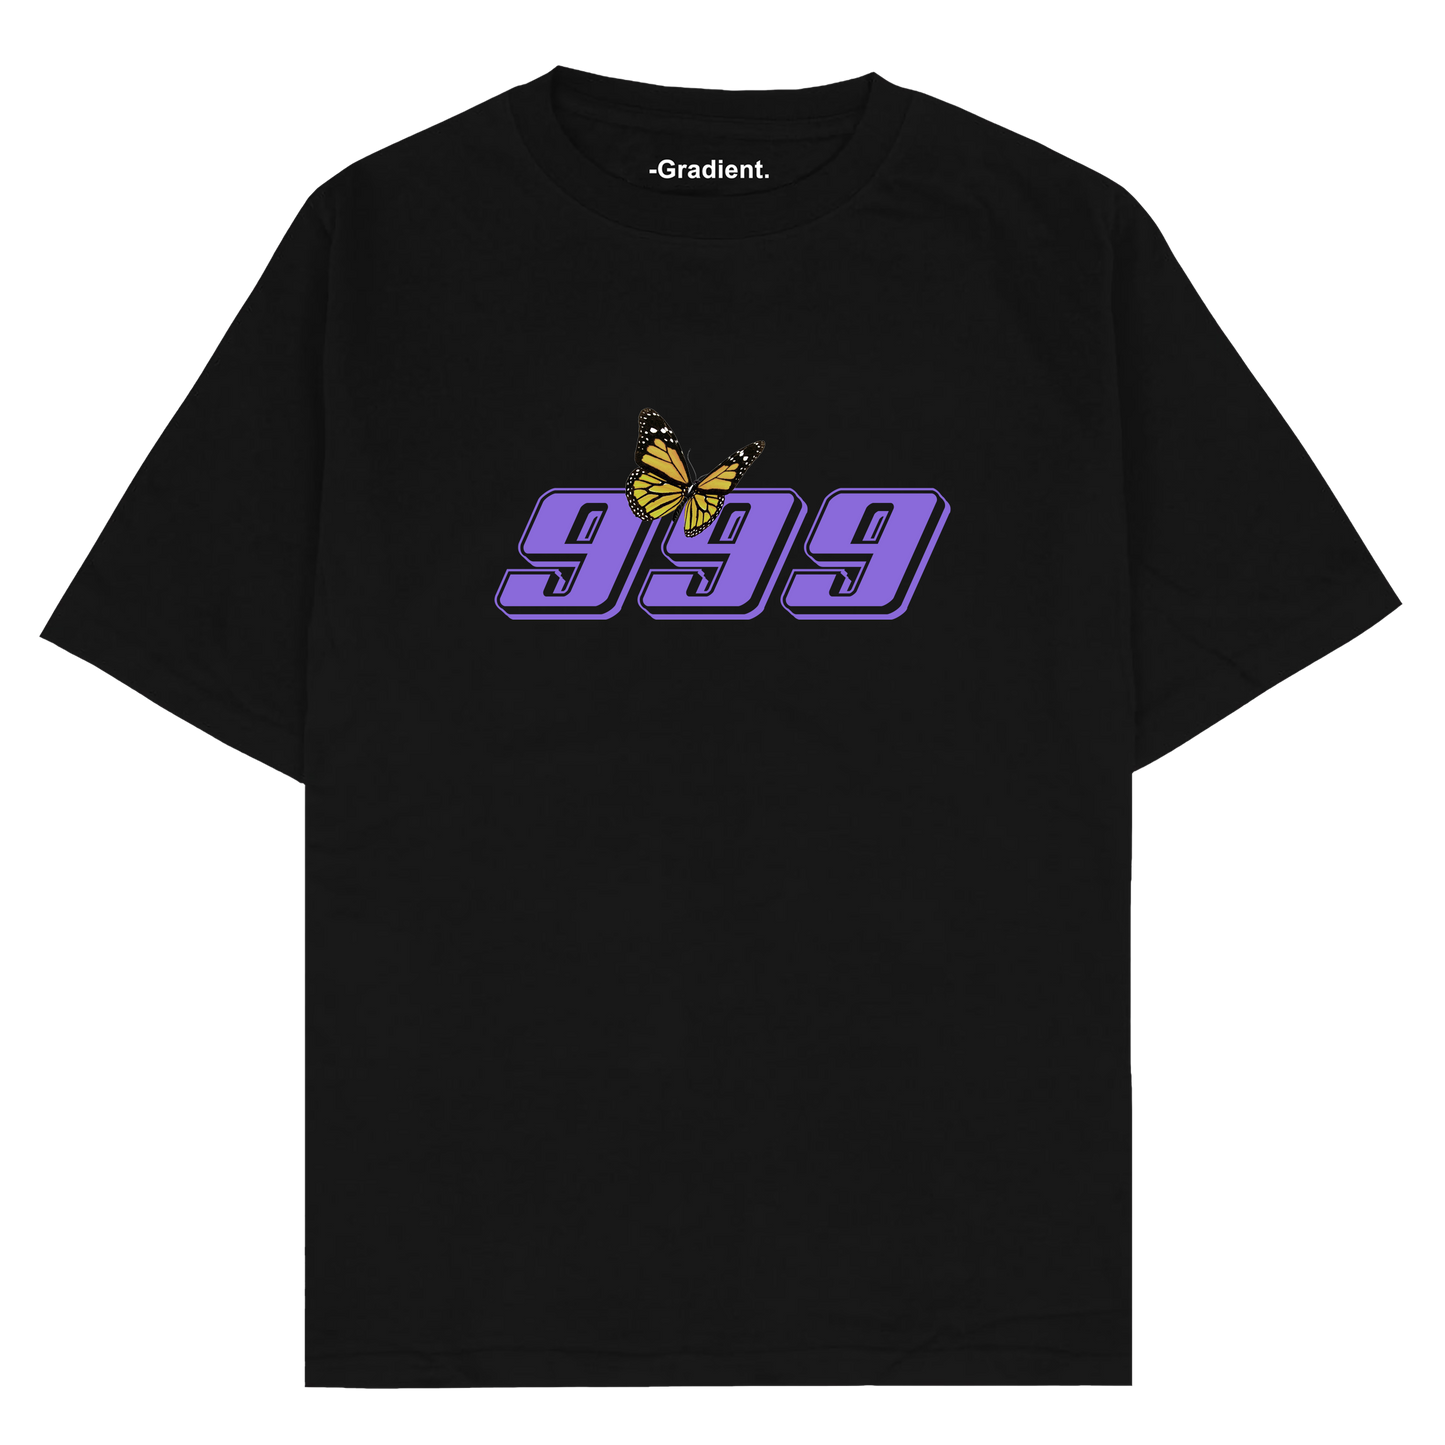 Juice WRLD "999" - Oversized T-Shirt